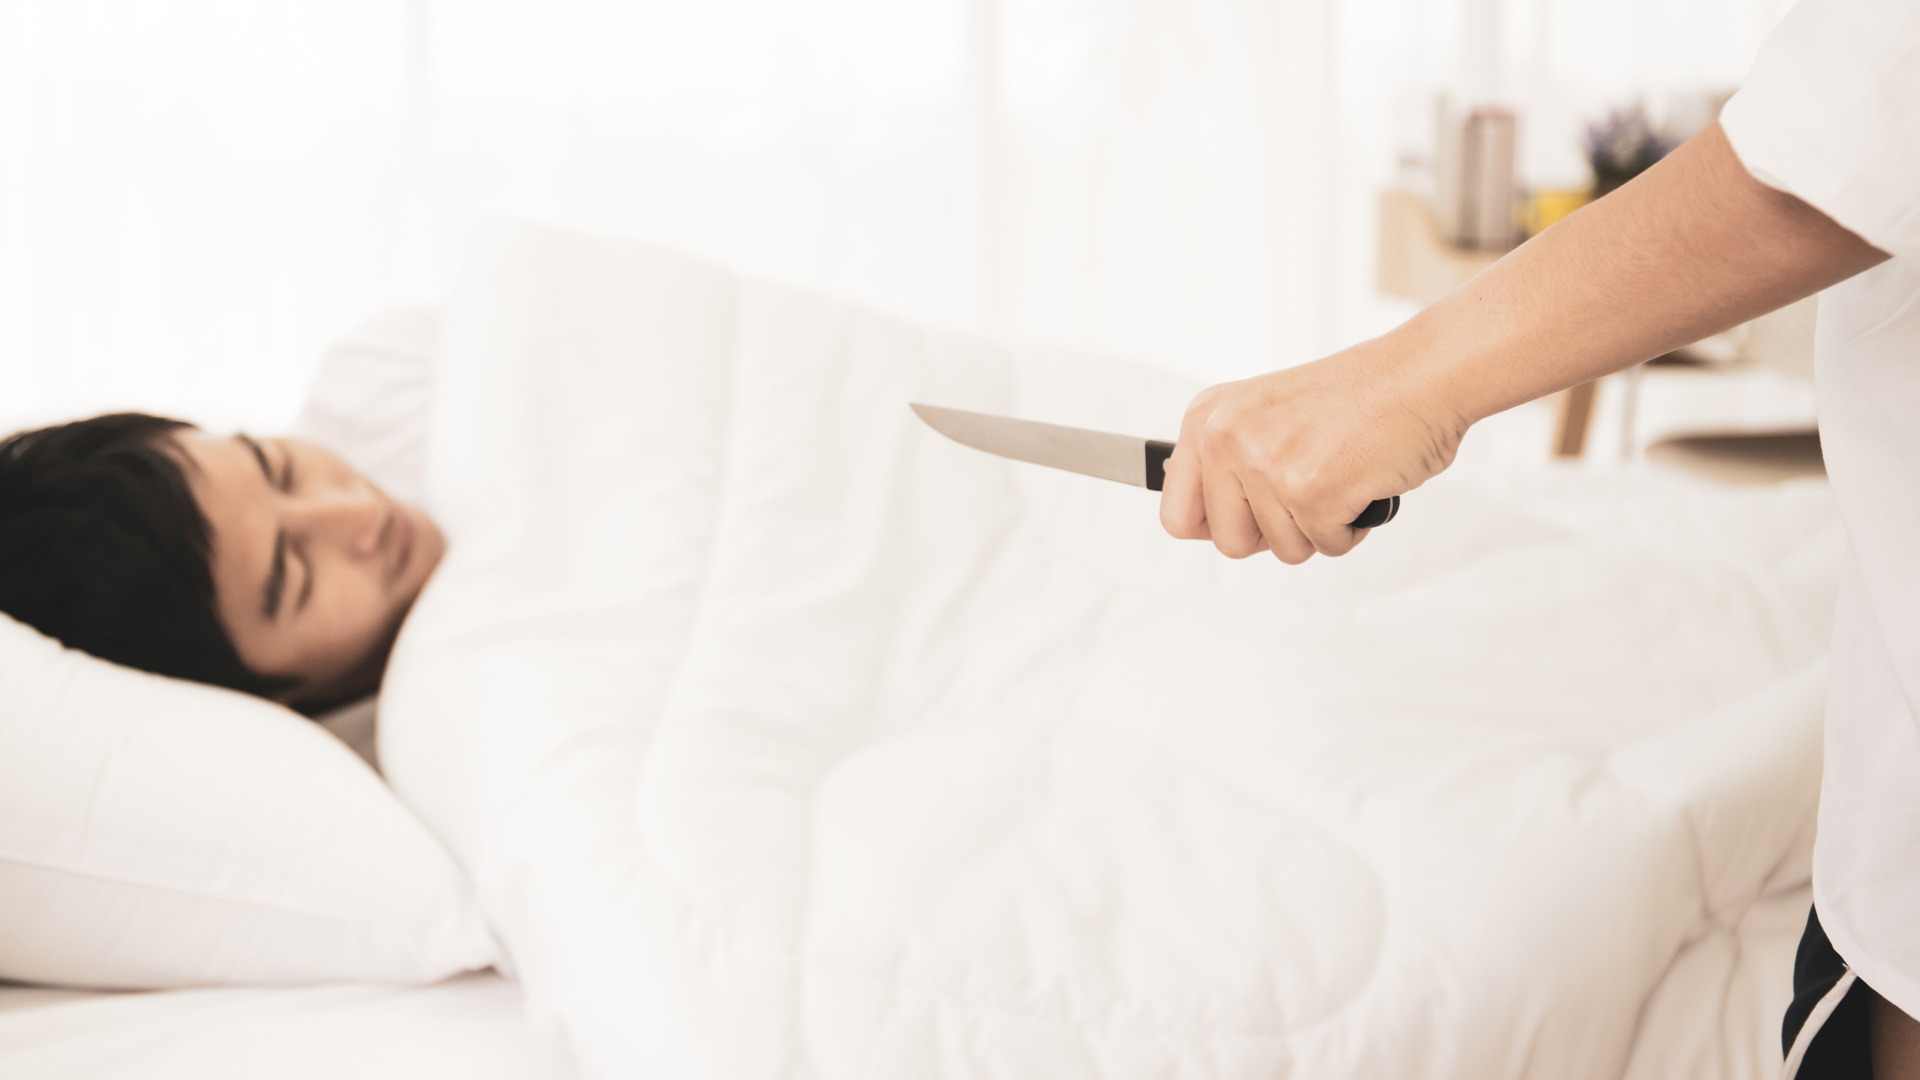 Késsel támadt alvó férjére egy amerikai nő, mert azt álmodta, hogy a férfi megcsalja